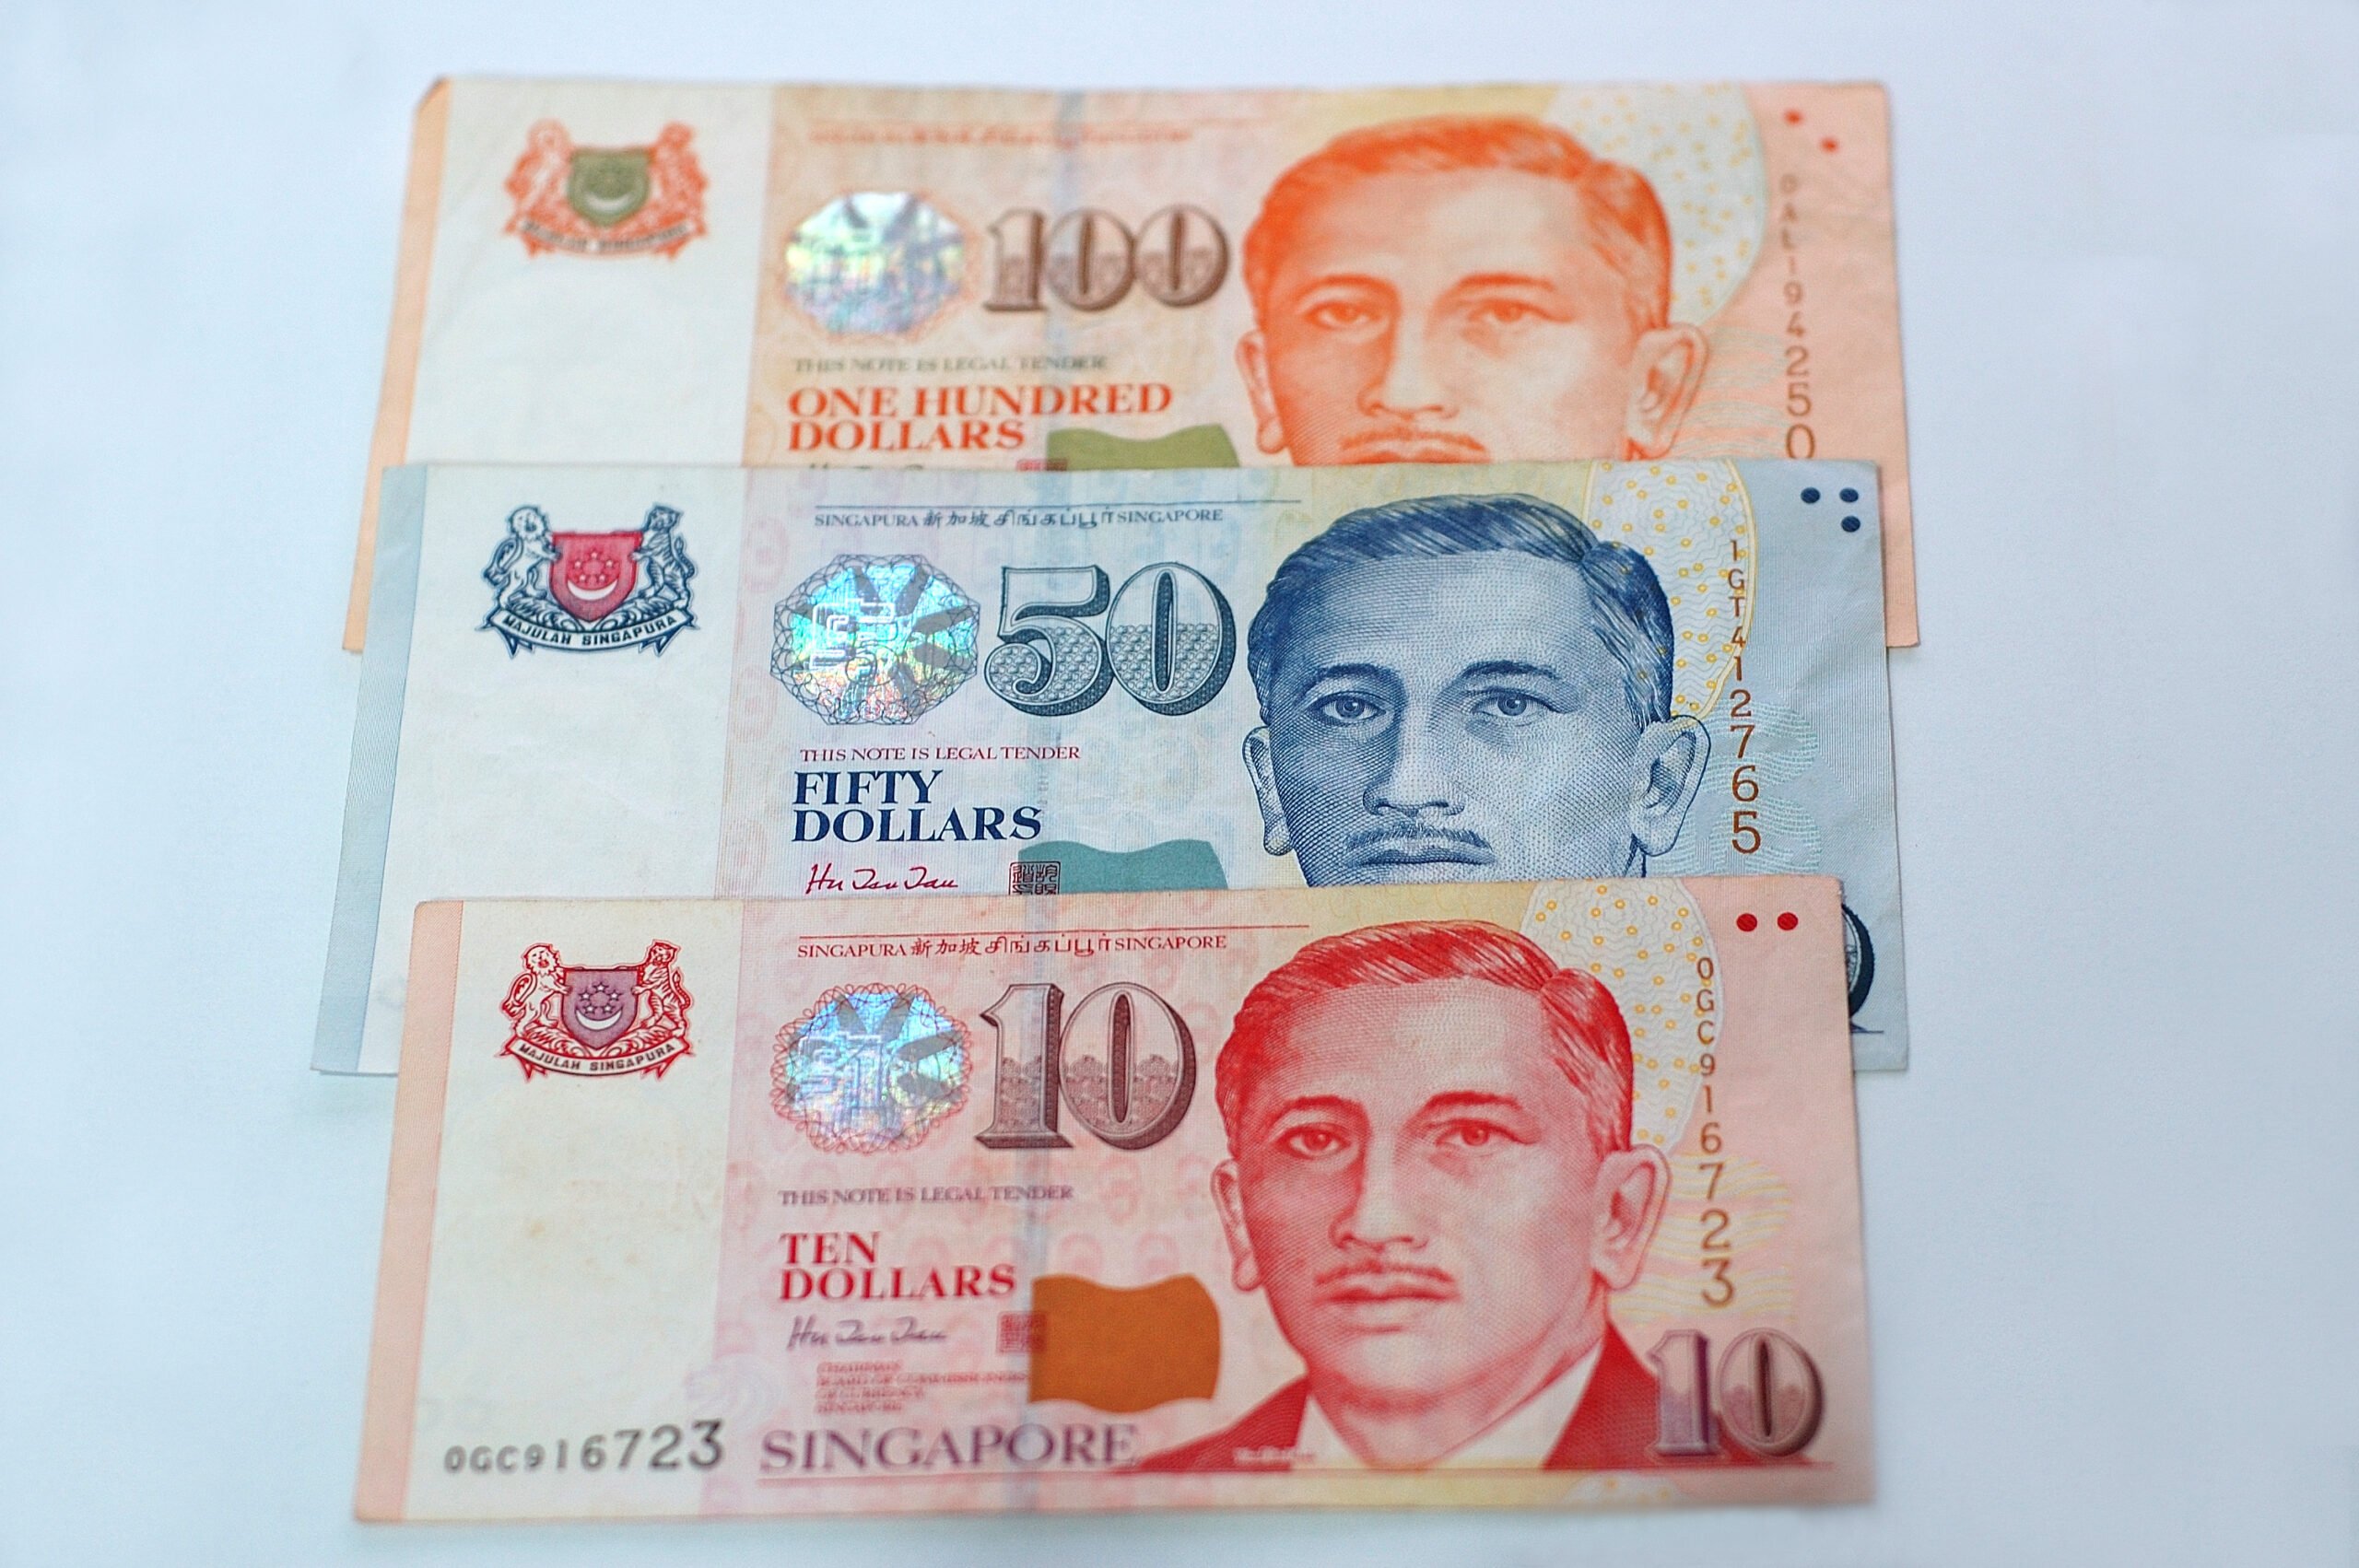 シンガポール 旧紙幣 シンガポールドル札・硬貨 合計129.55ドル - 貨幣